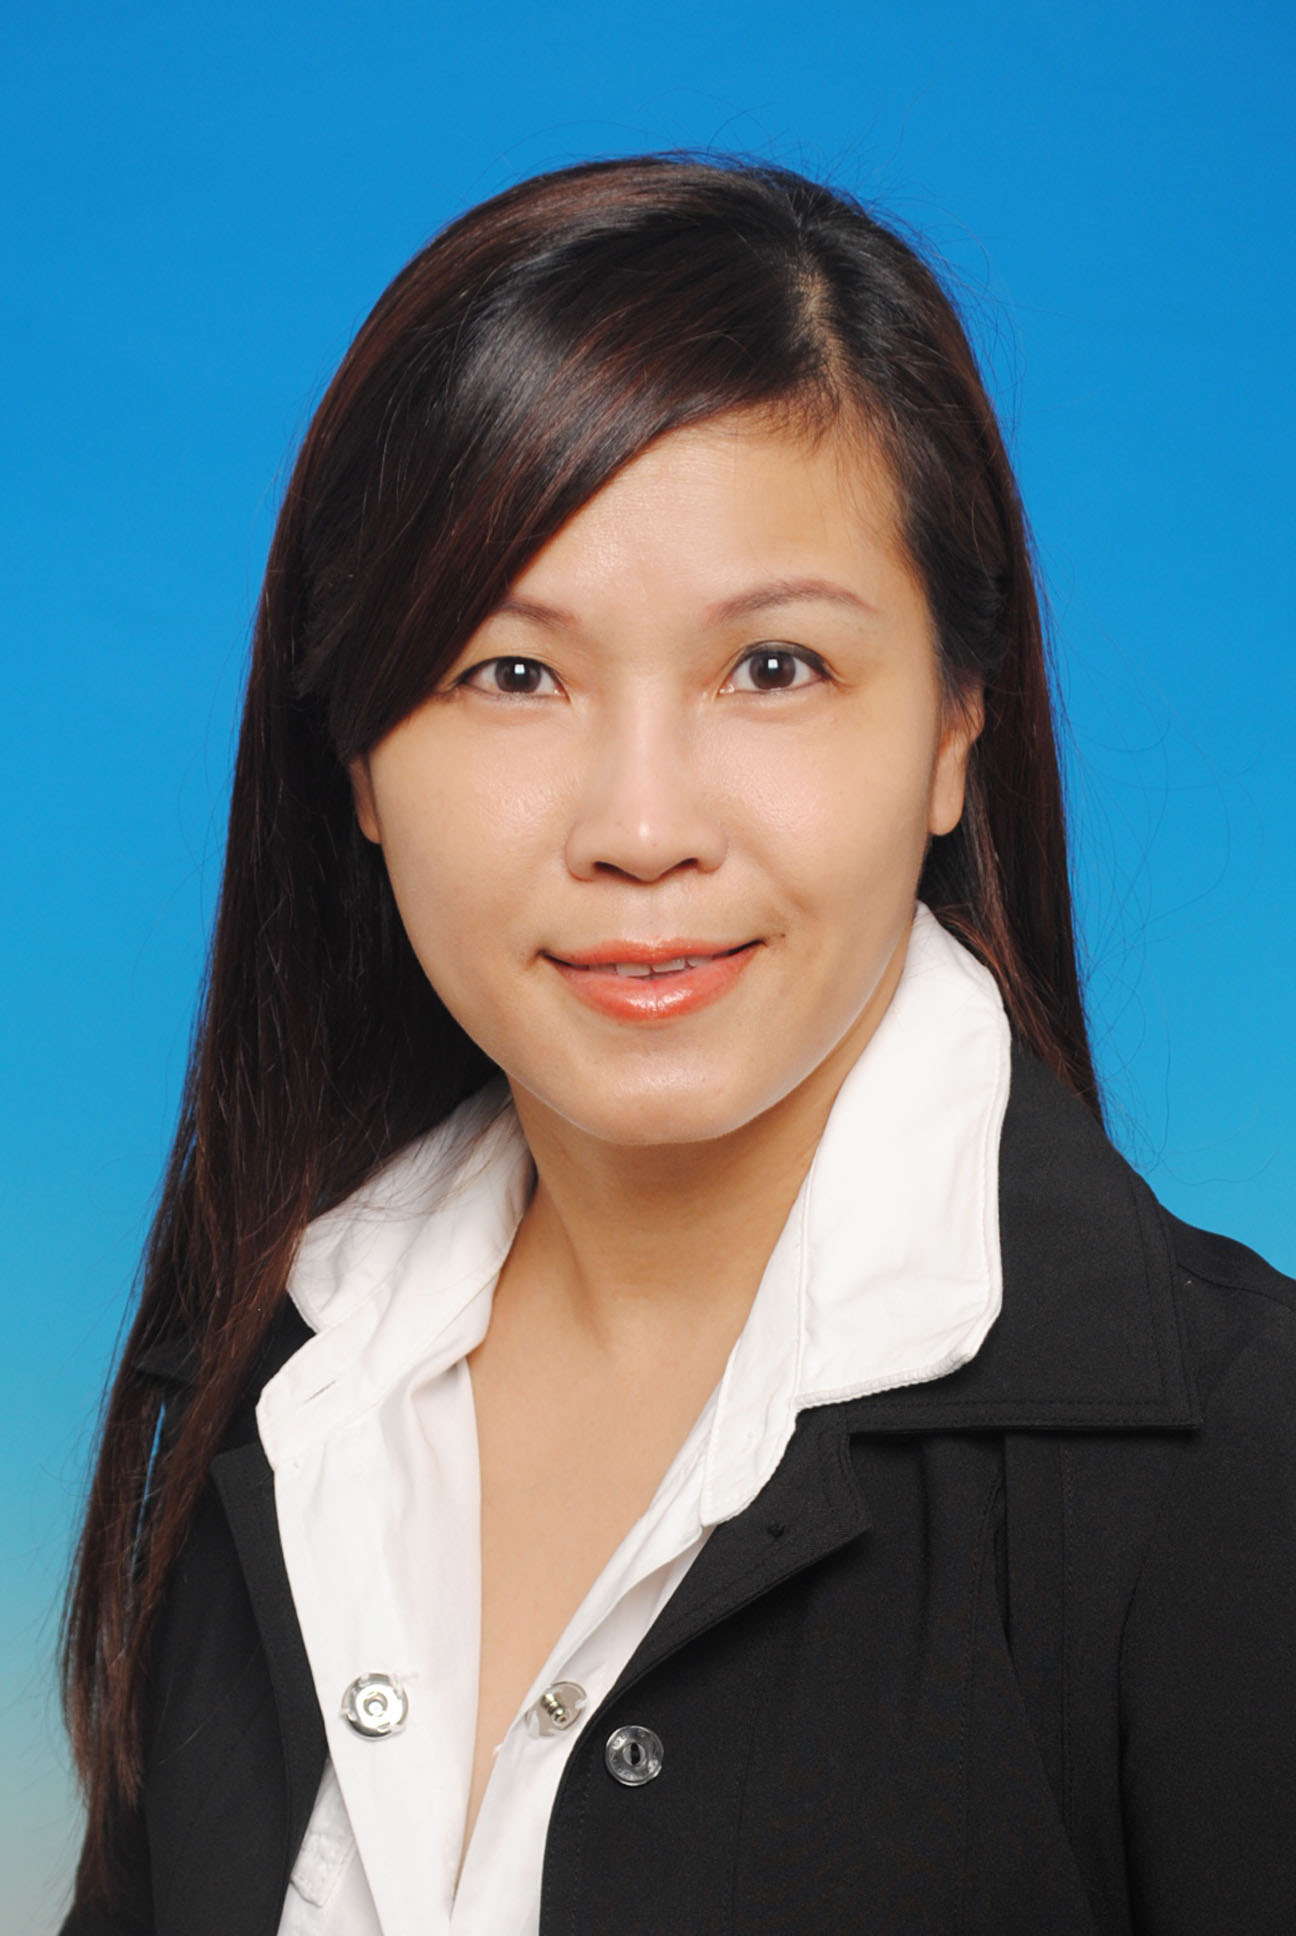 Ms. Leong Siew Geok, Jaddie